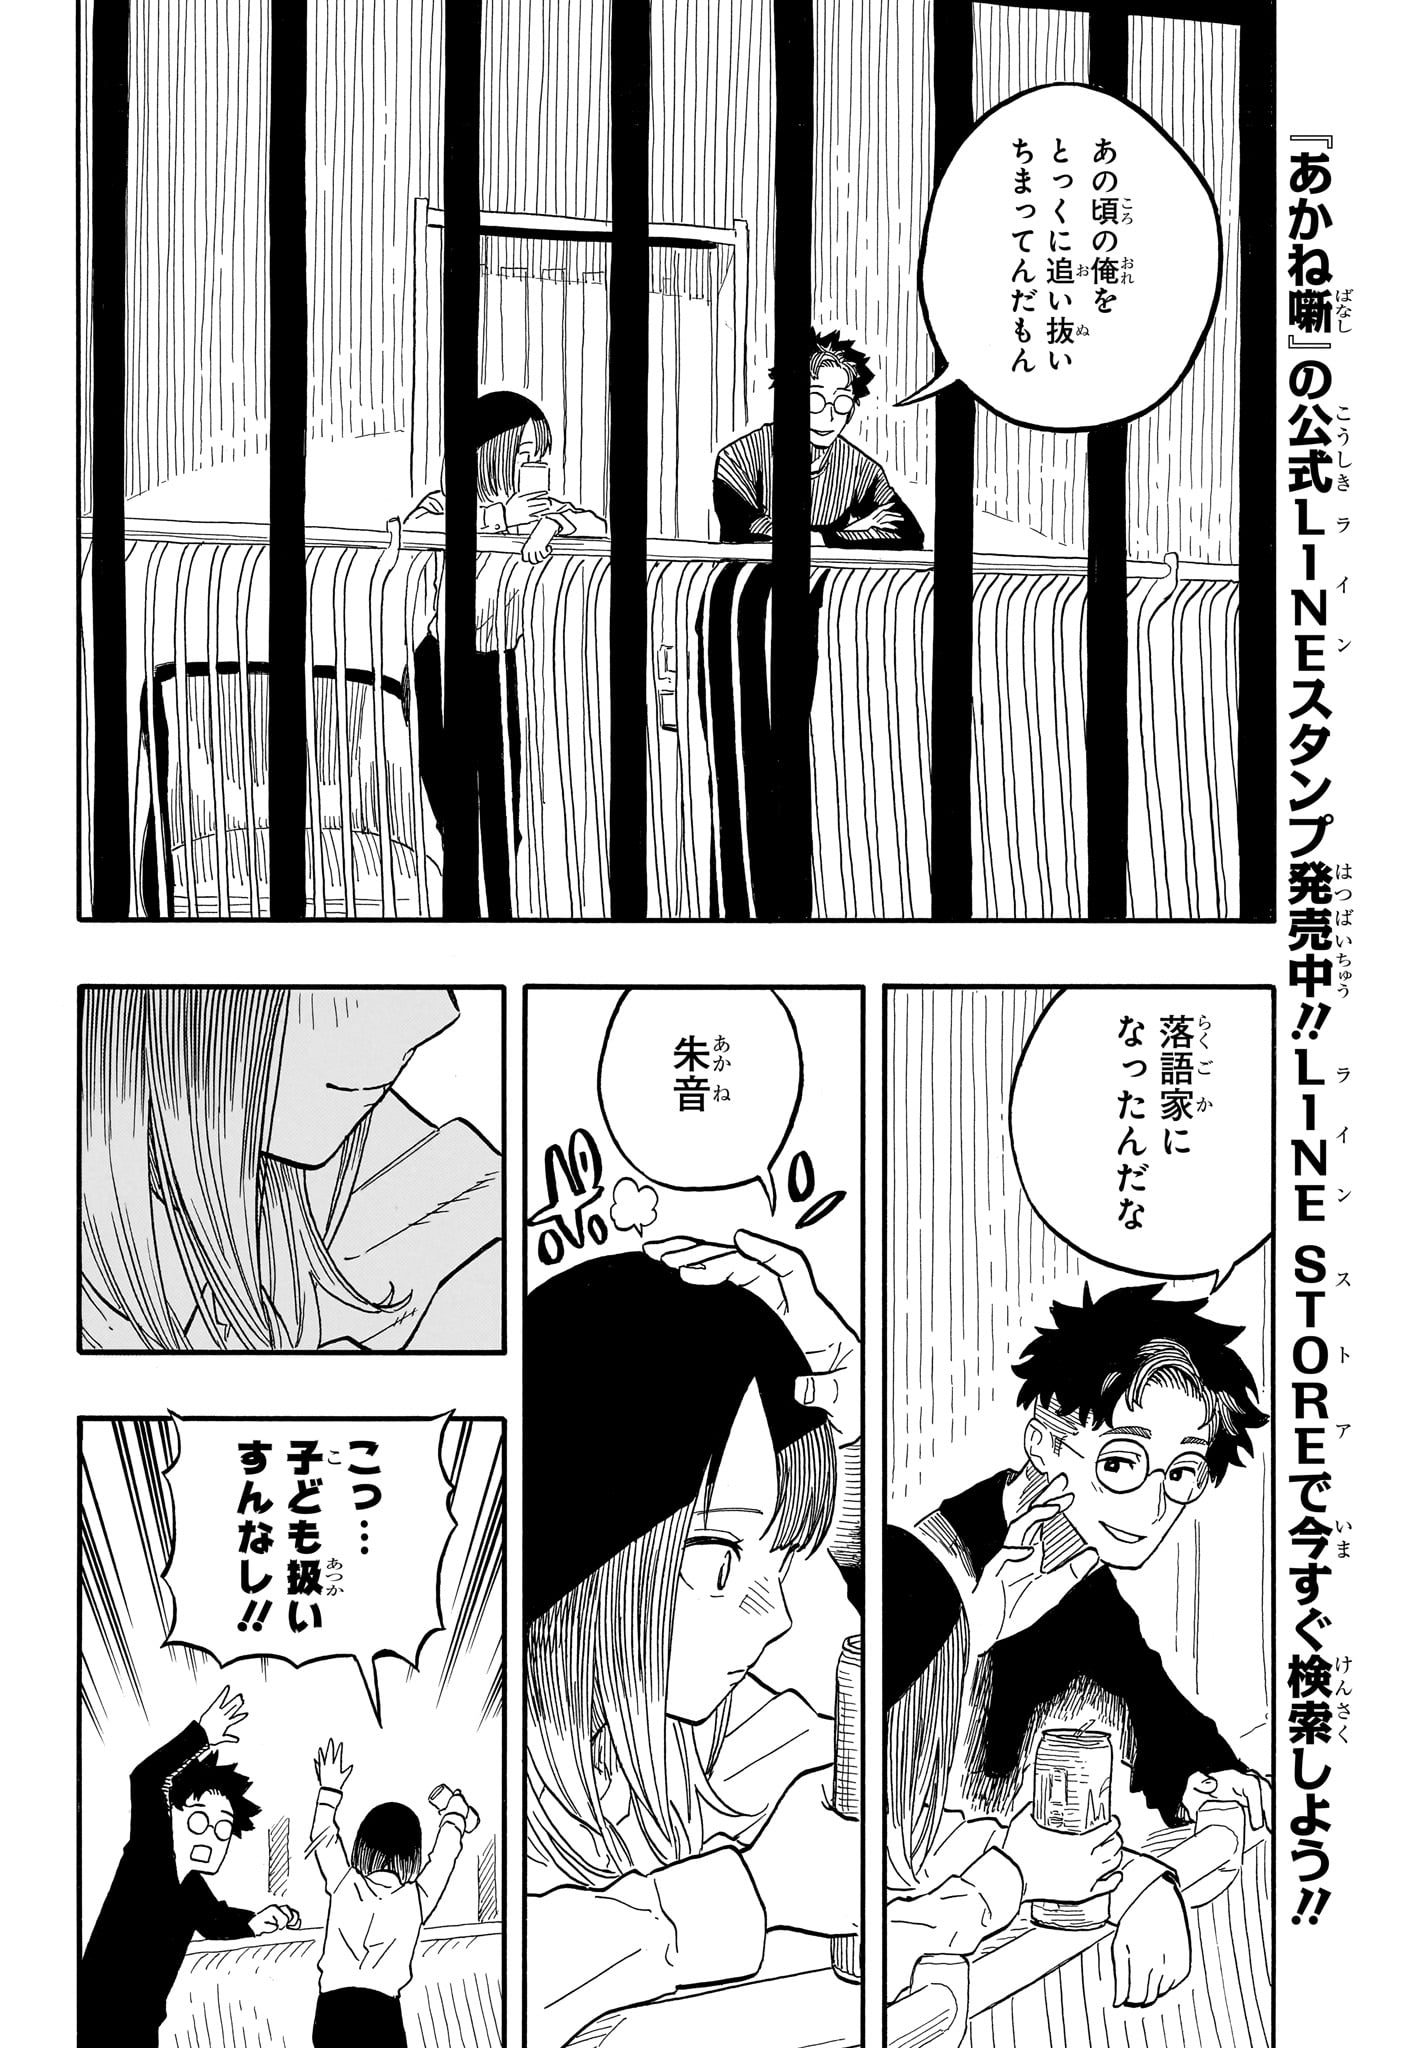 Akane-Banashi - Chapter 107 - Page 4